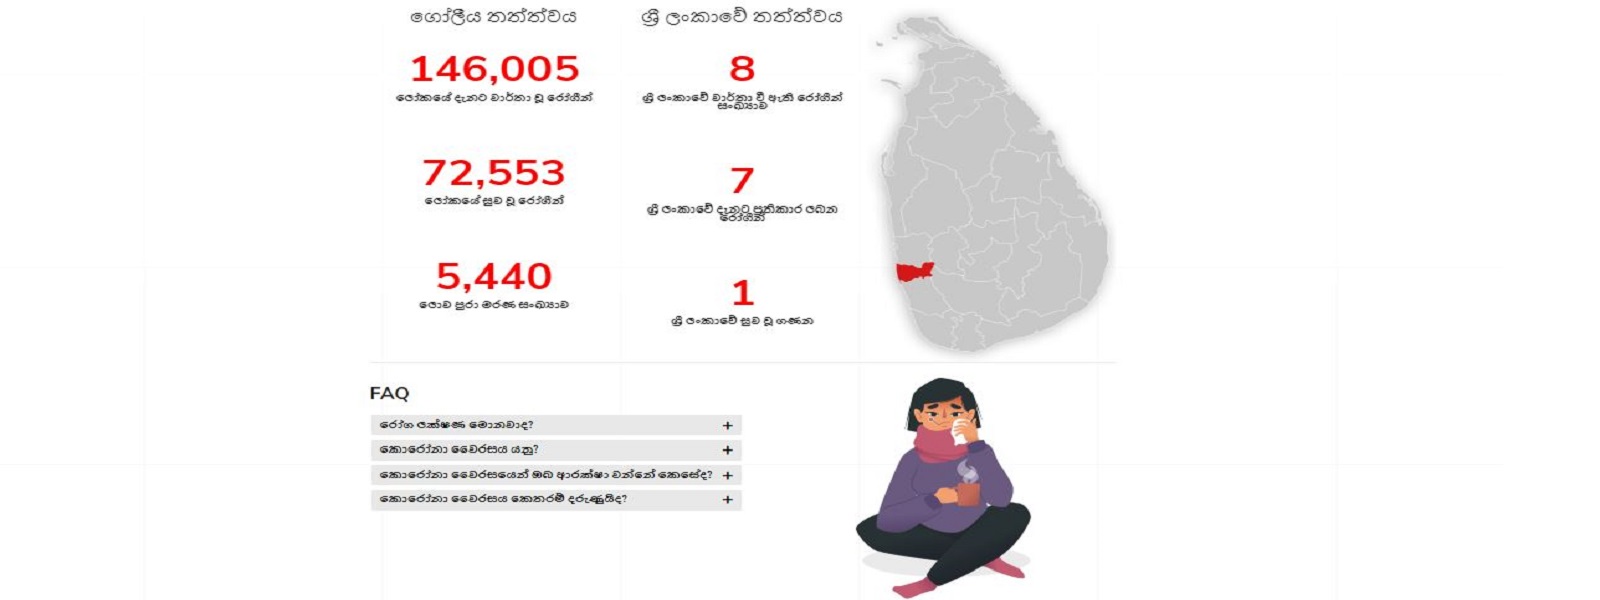 கொரோனா வைரஸ் தொடர்பான தகவல்களுக்கு புதிய இணையத்தளம் அறிமுகம் 